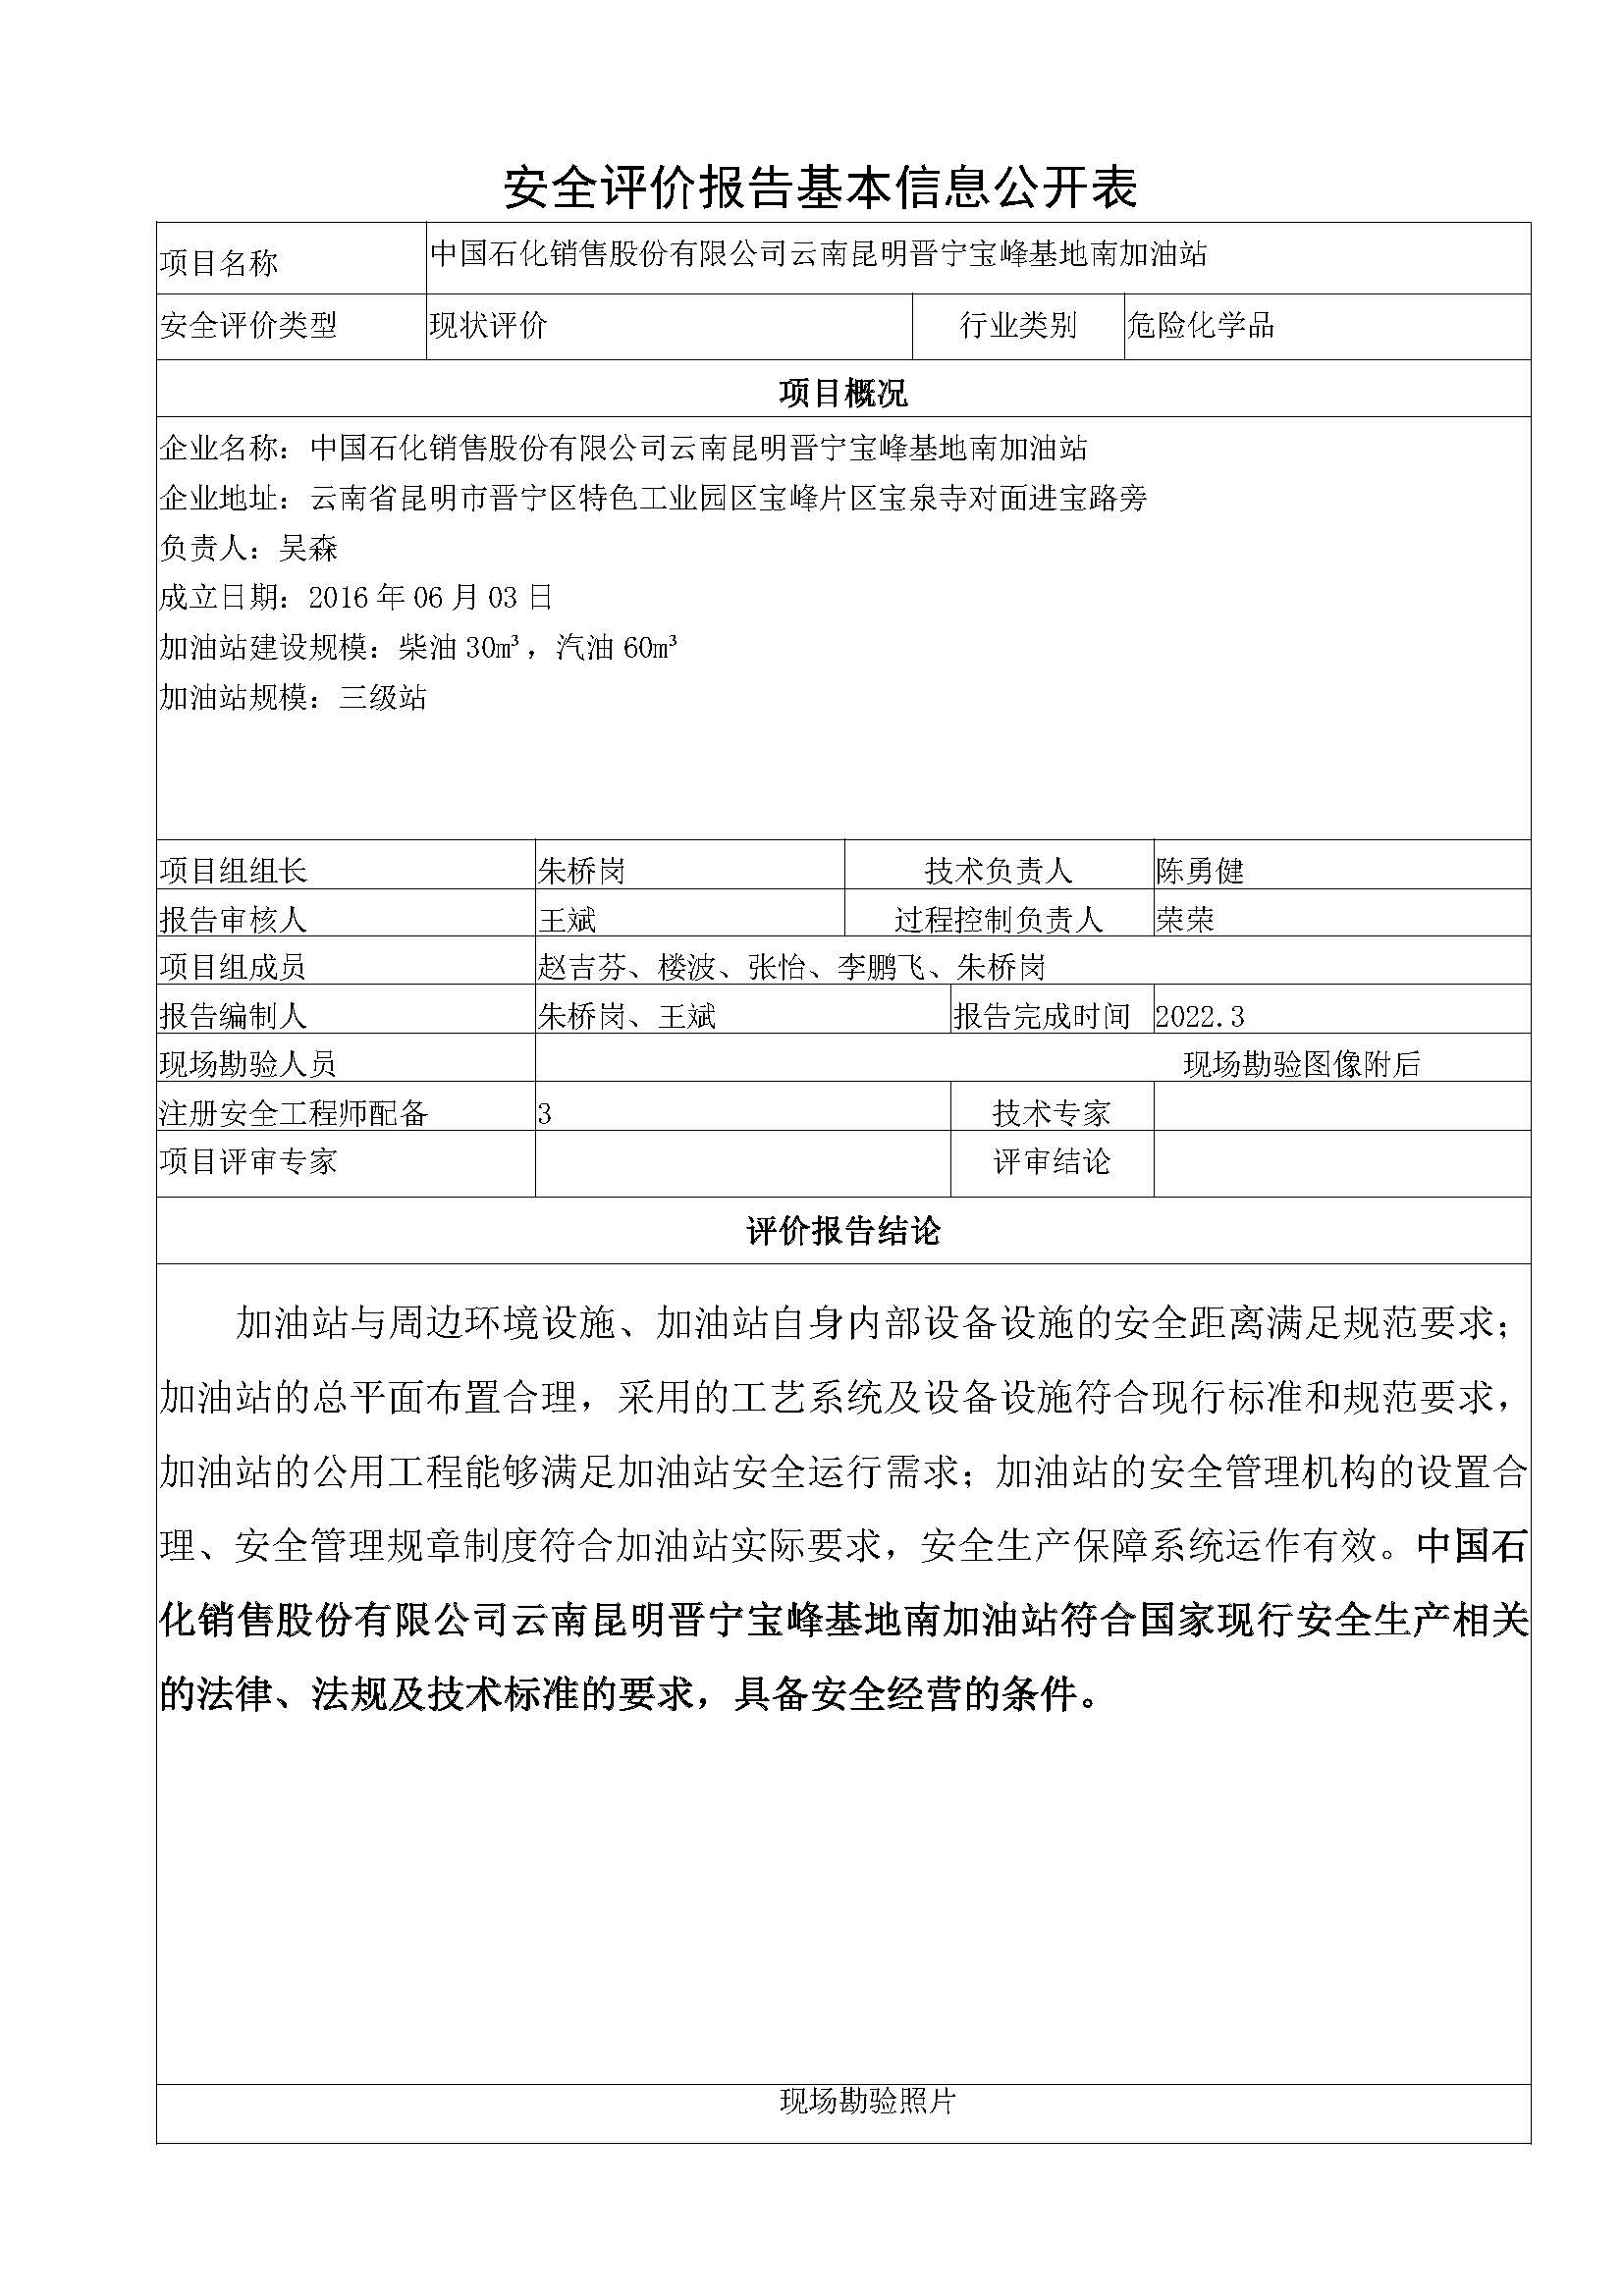 宝峰基地南安全评价报告基本信息公开表